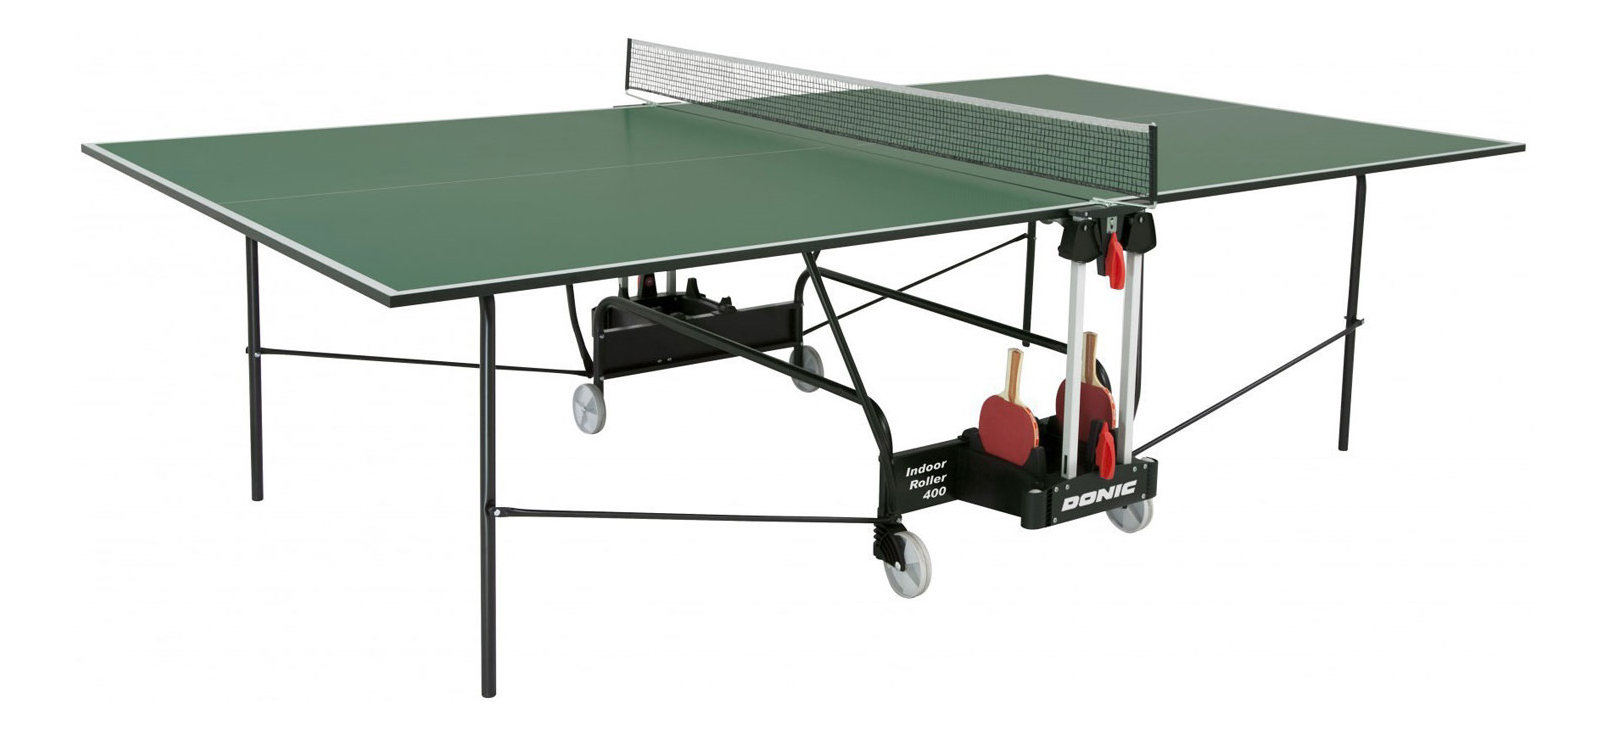 фото Теннисный стол donic indoor roller 400 зеленый, с сеткой